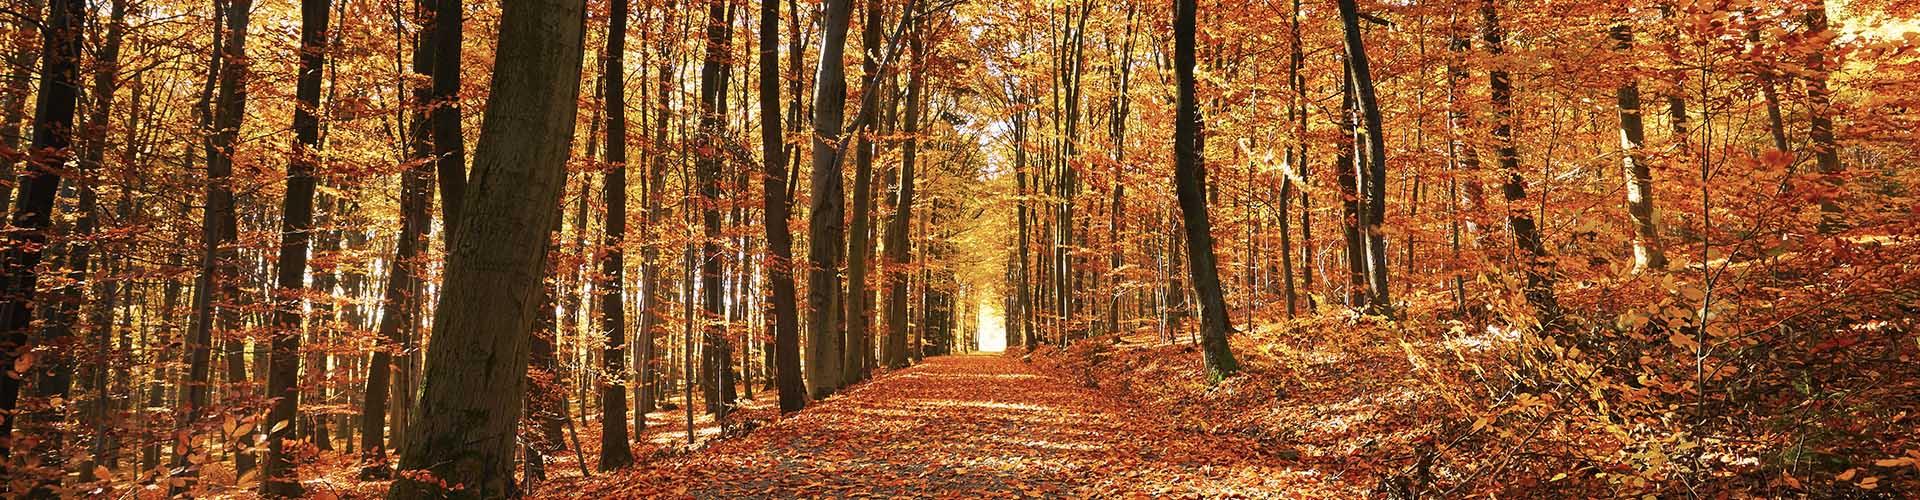 Seguro de Decesos RGAAsistencia Familiar - Bosque con camino en estación de otoño